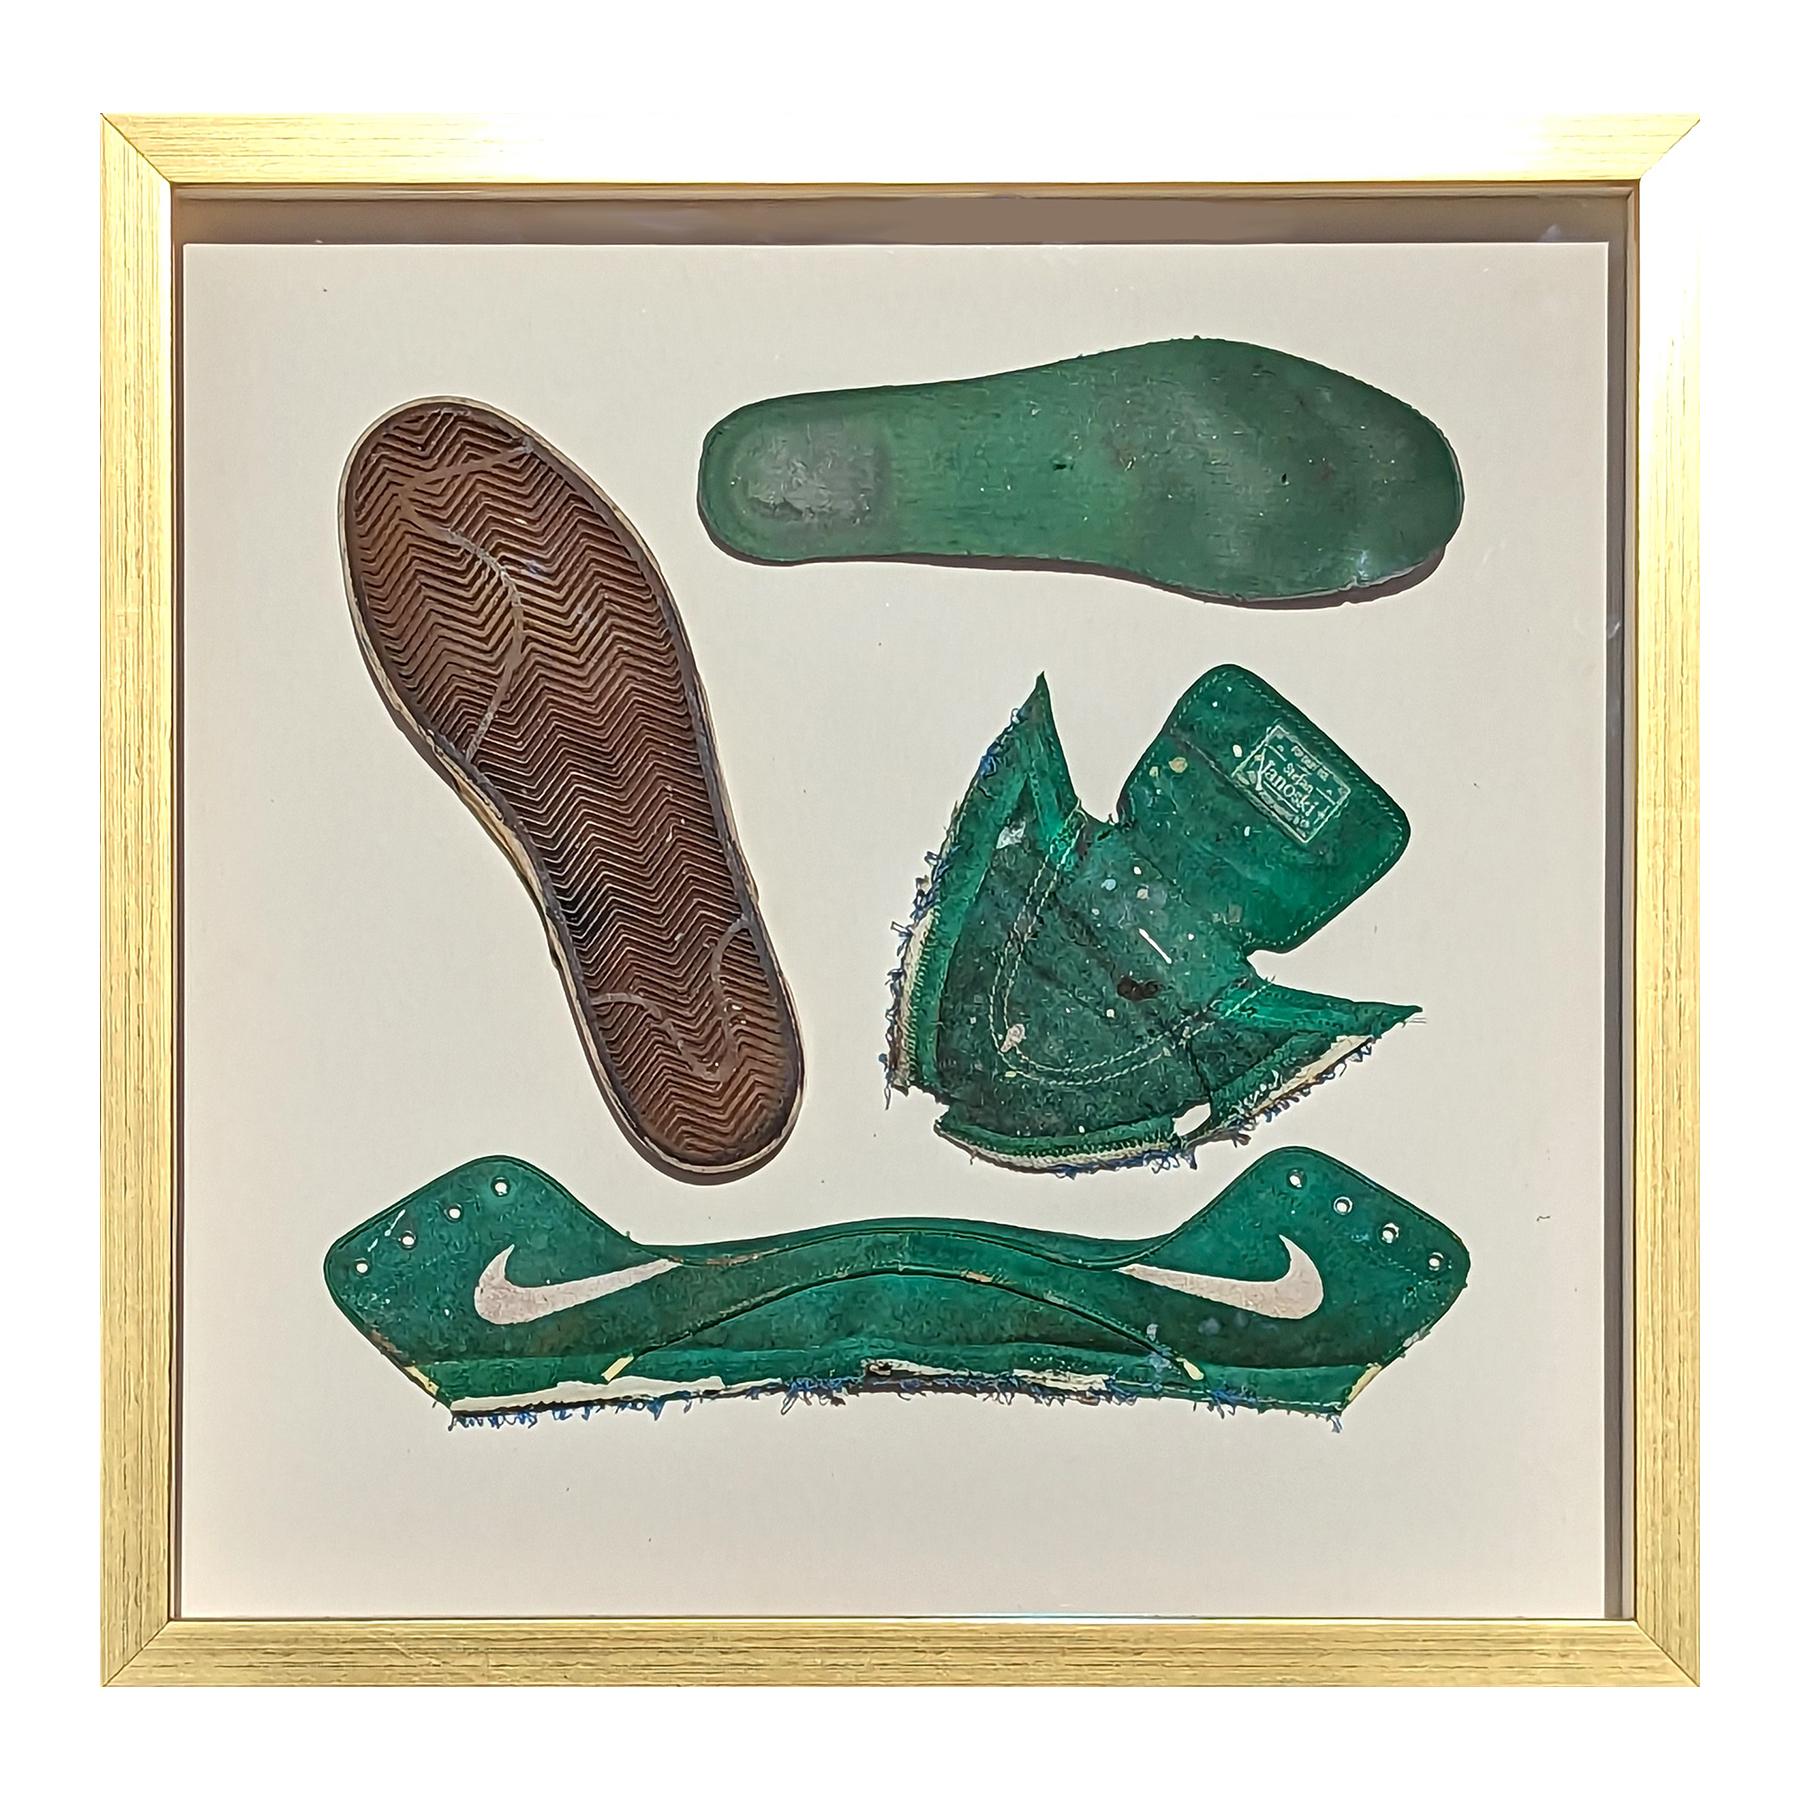 Zeitgenössisches dekonstruiertes Gemälde in Mischtechnik und gefundenem Objekt, grünes Schuh – Sculpture von Tra' Slaughter